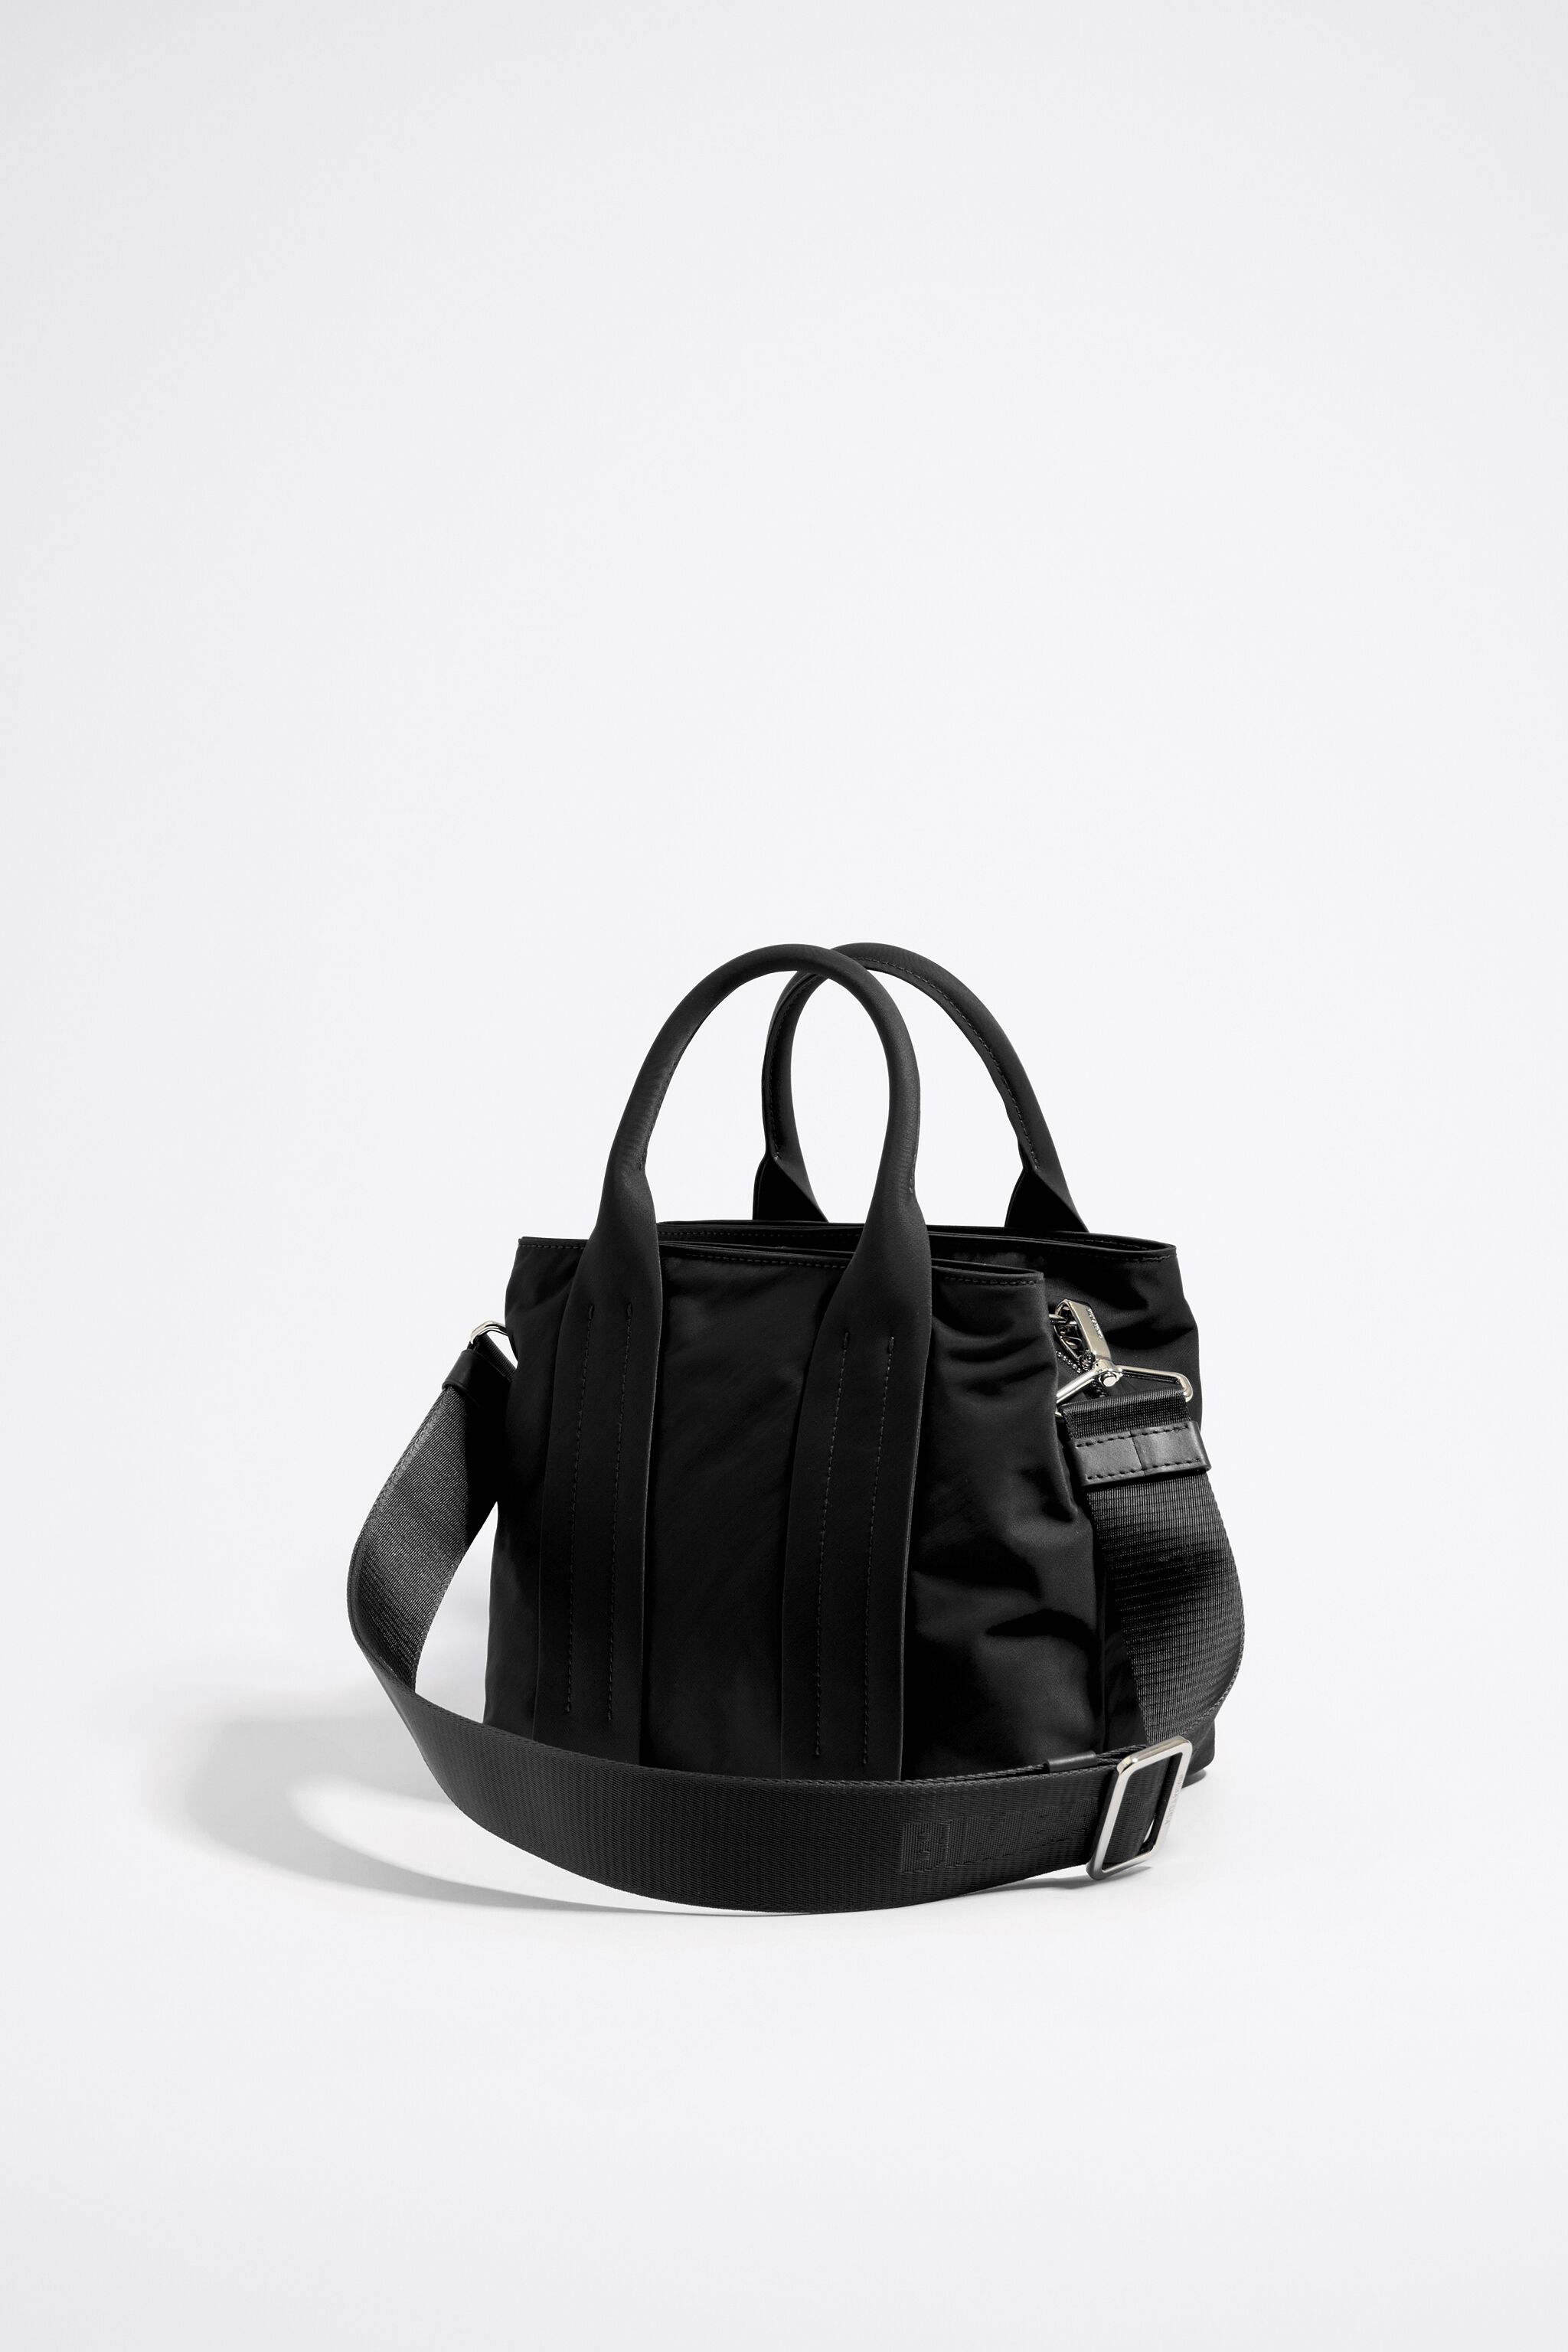 Medium black nylon handbag